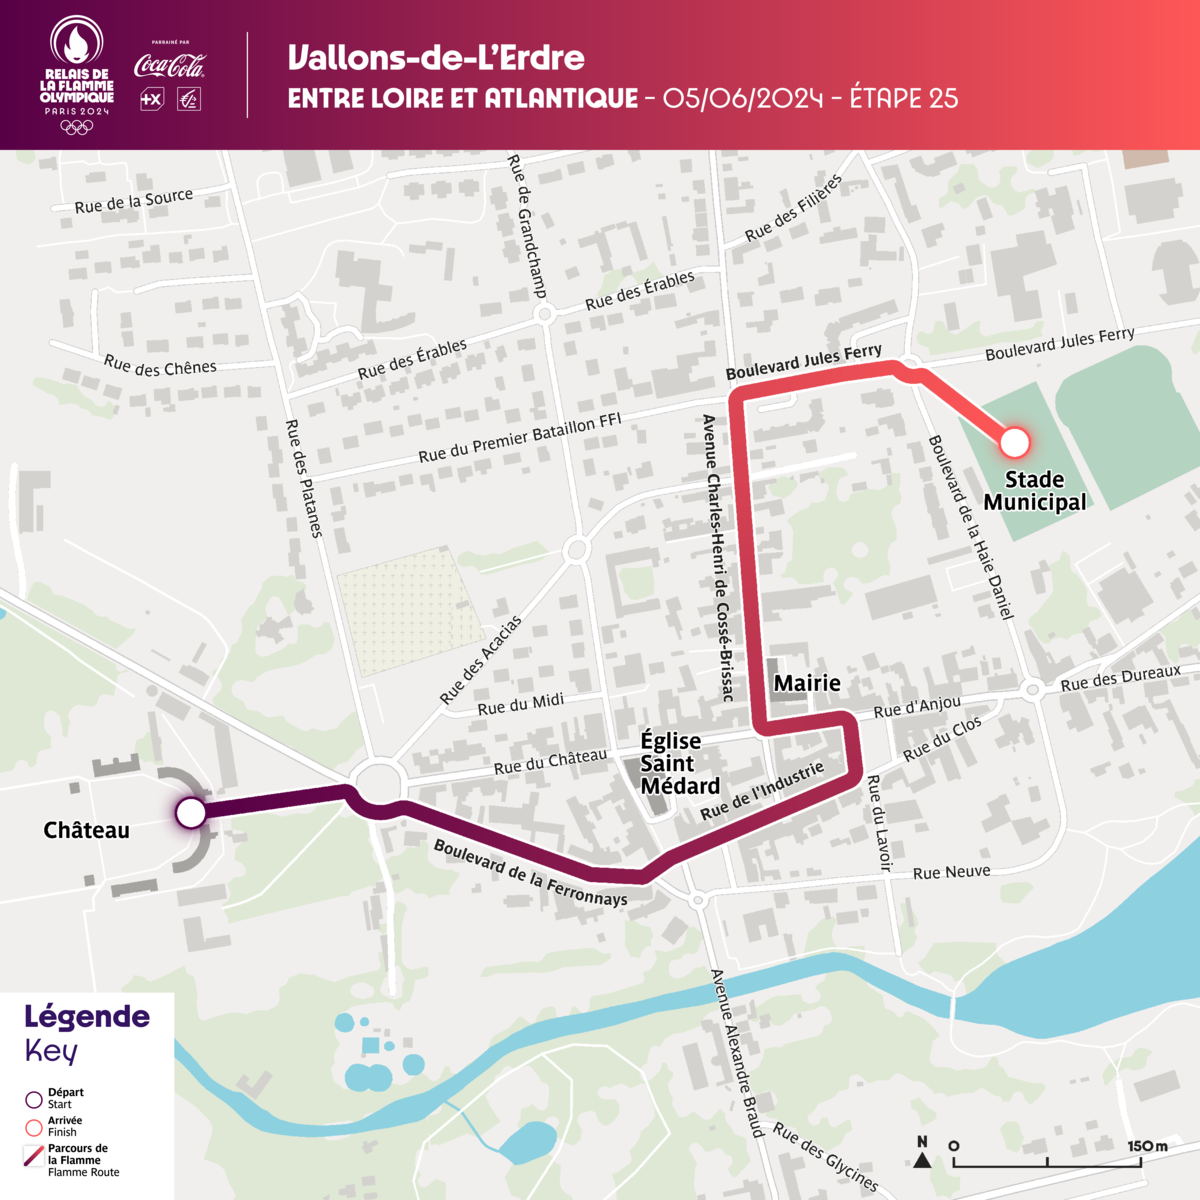 Plan du Parcours de la flamme olympique sur Vallons-de-l'Erdre